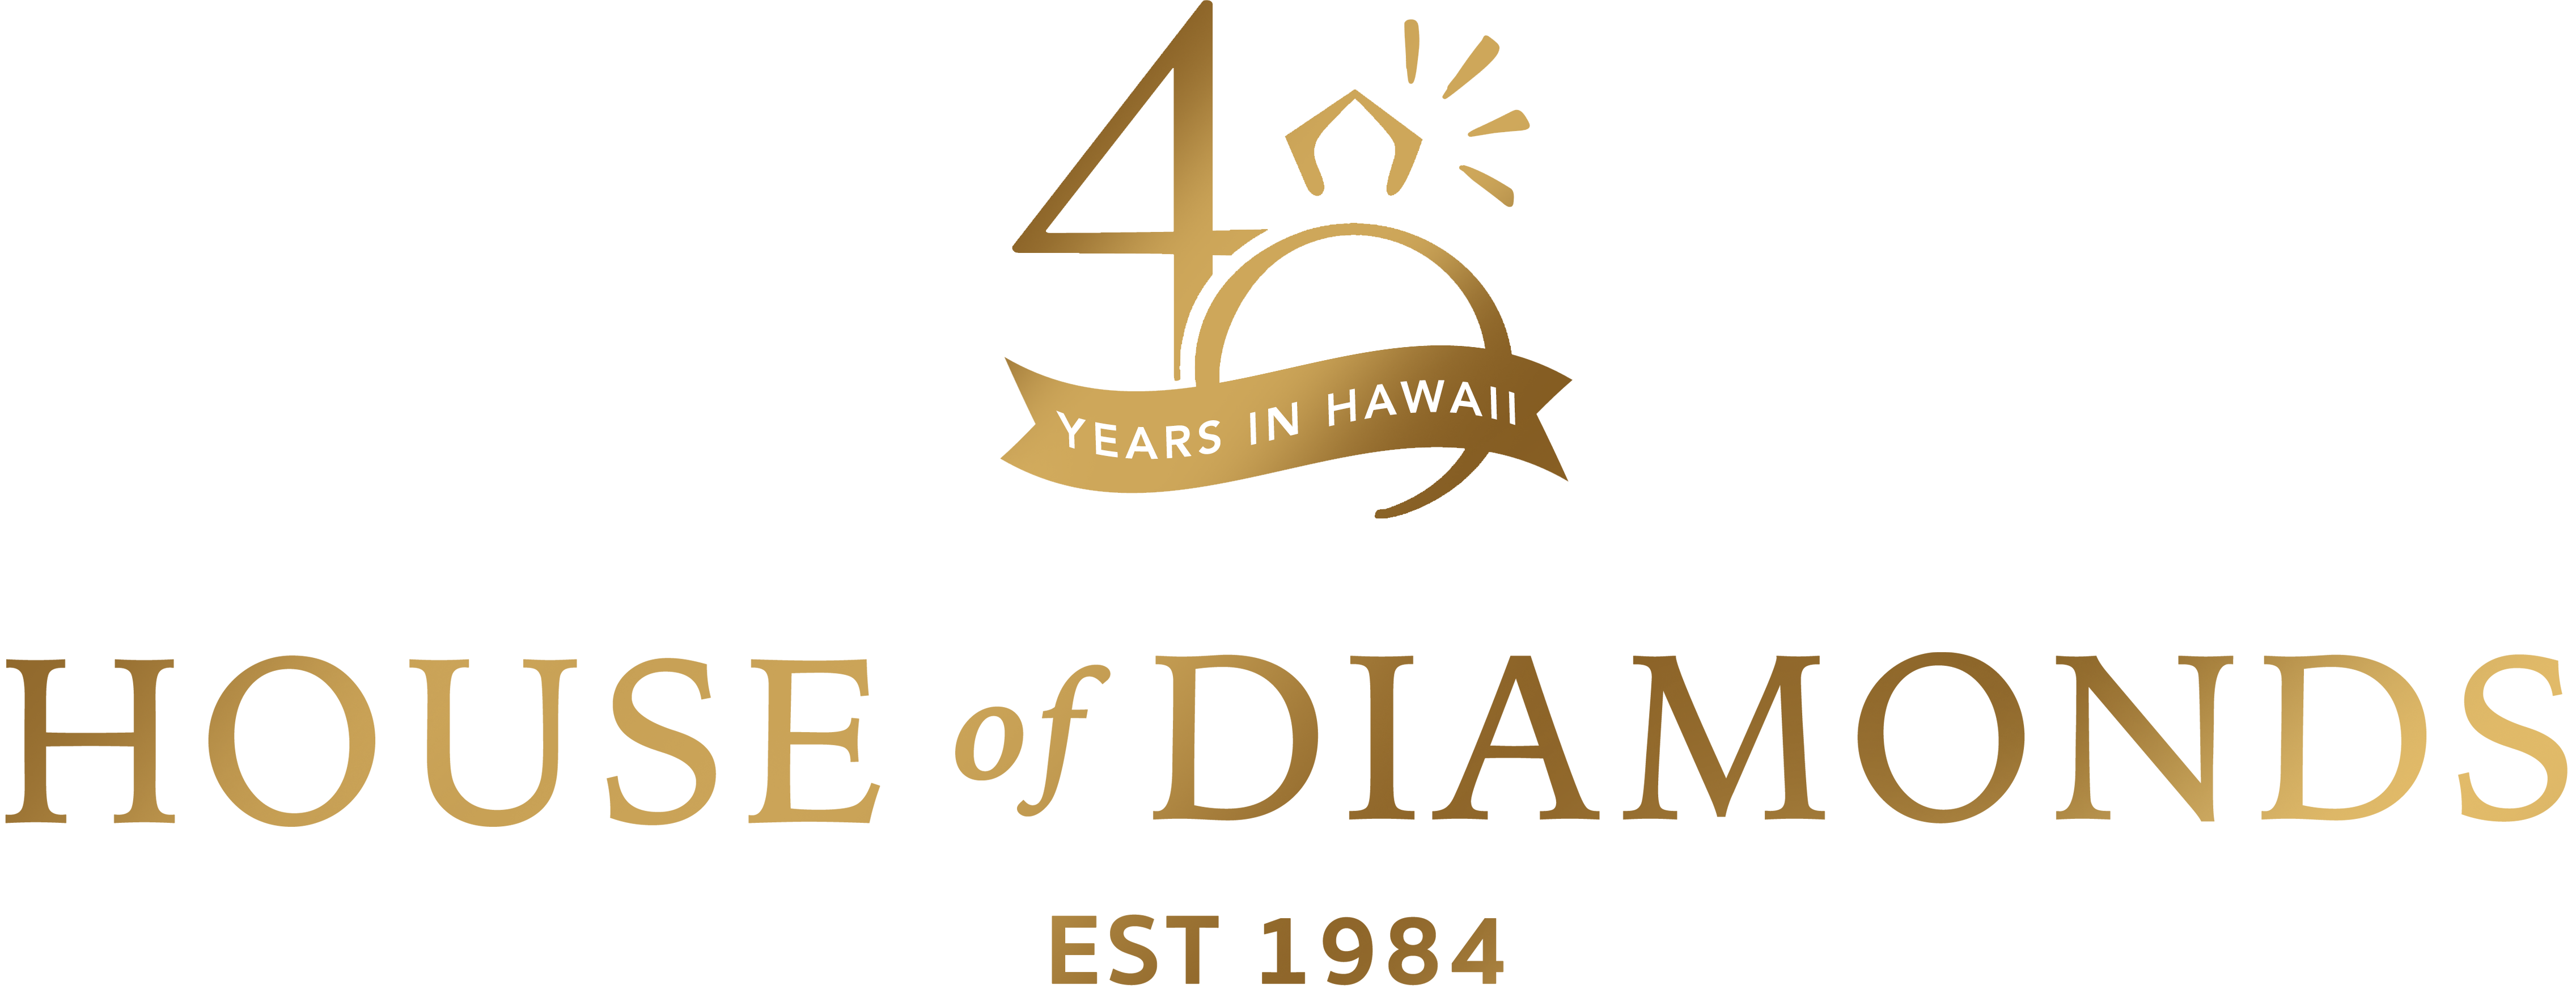 House of Diamonds Hawaii